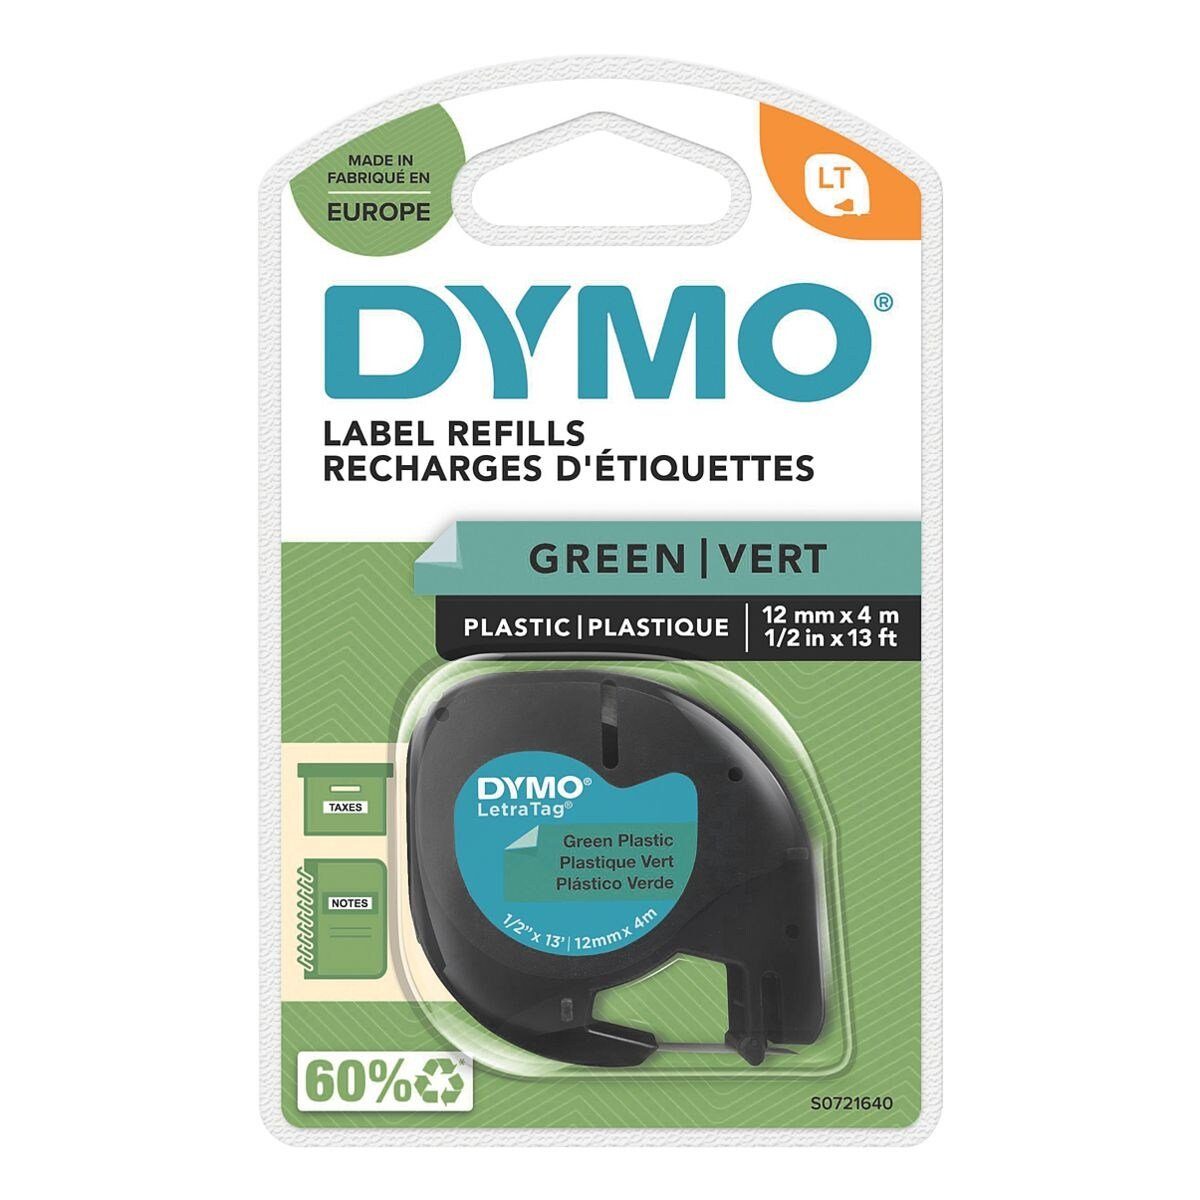 DYMO Beschriftungsband schwarz auf grün | Beschriftungsbänder